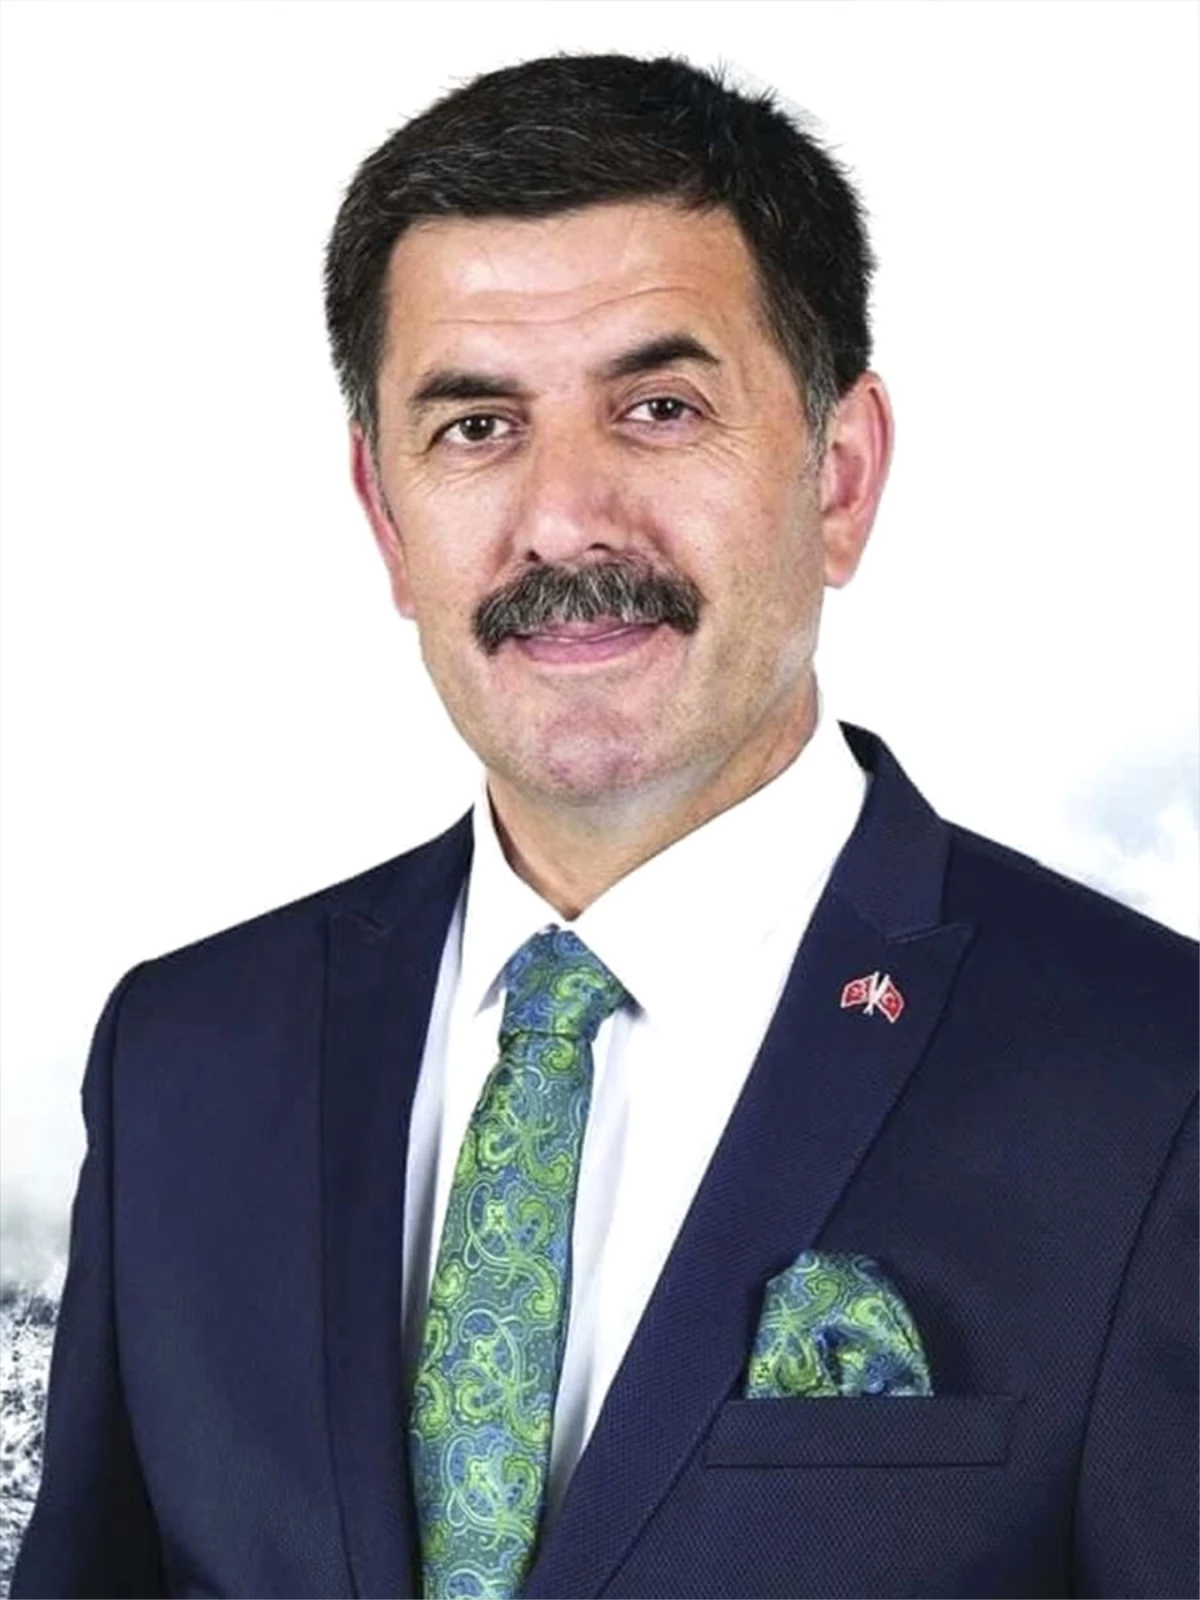 Erzincan Belediye Başkanlığını Kesin Olmayan Sonuçlara Göre, MHP Adayı Bekir Aksun Kazandı.